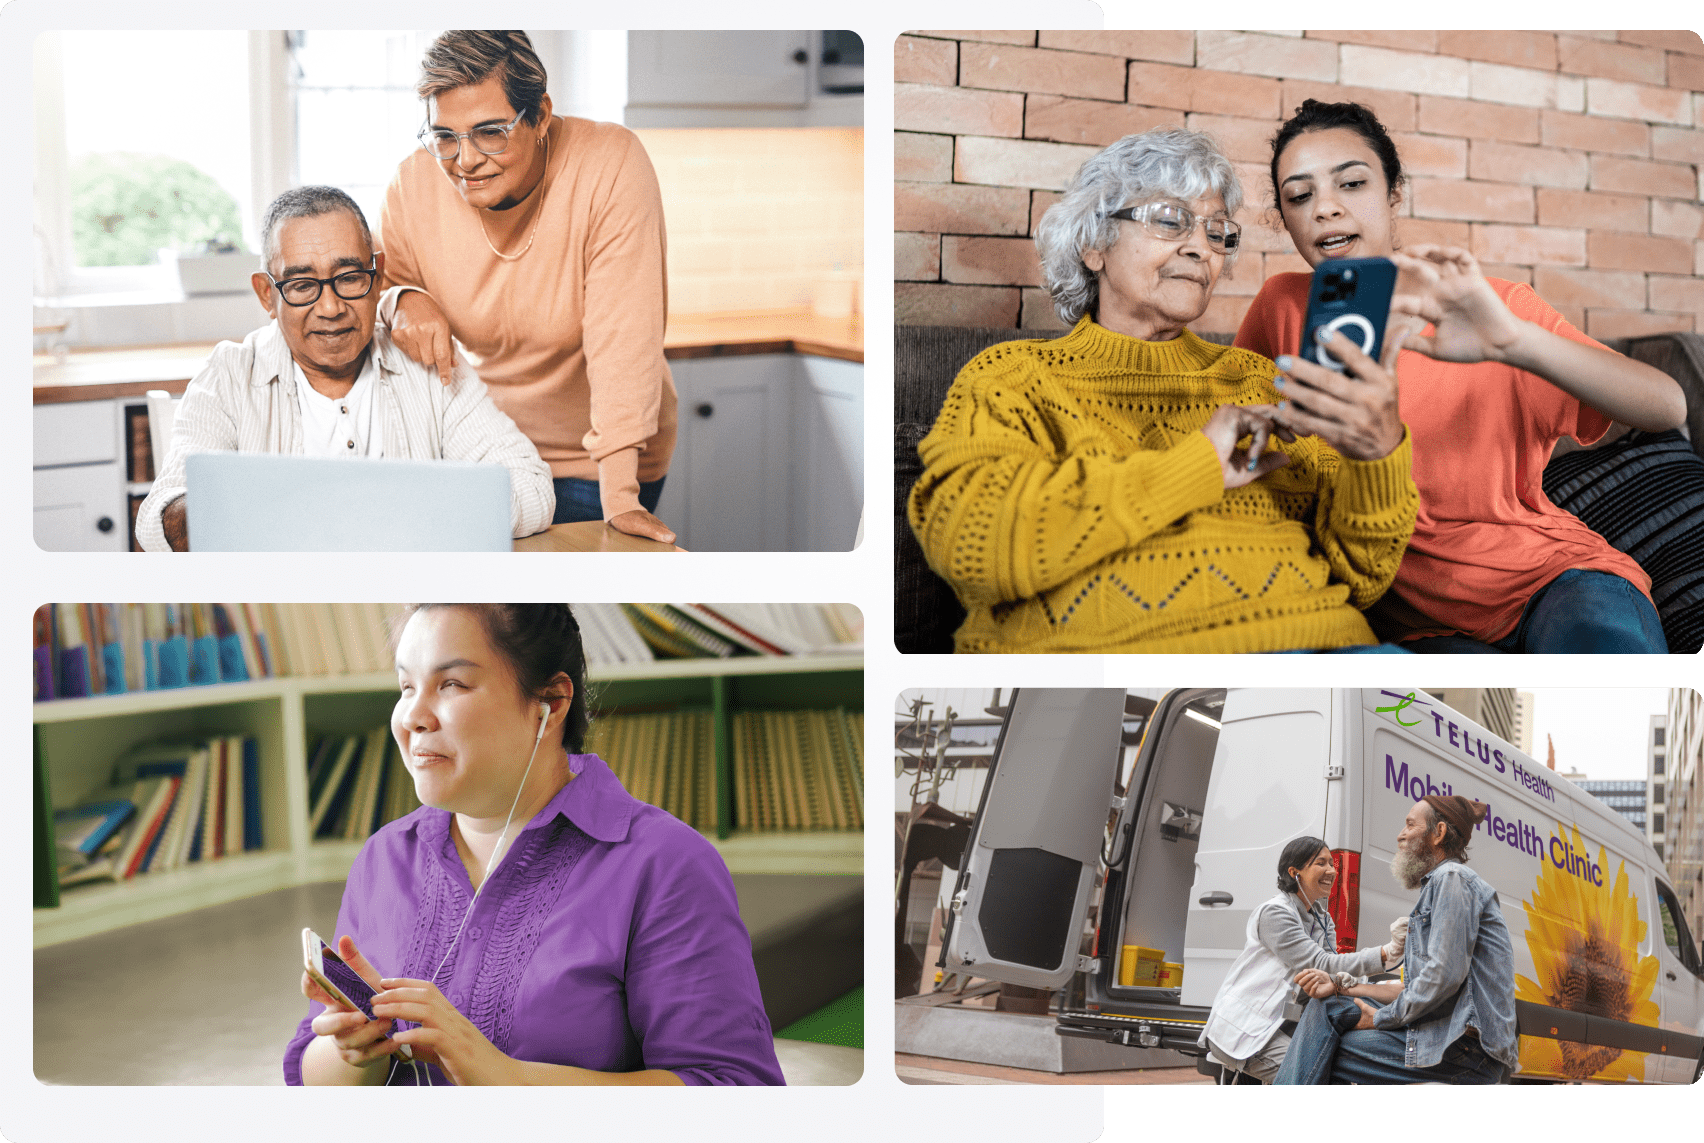 Un collage d'images : Un couple de personnes âgées regarde un ordinateur portatif; deux femmes regardant un téléphone intelligent ; une personne avec des écouteurs et un téléphone intelligent ; un membre de la Clinique mobile de santé TELUS avec un patient